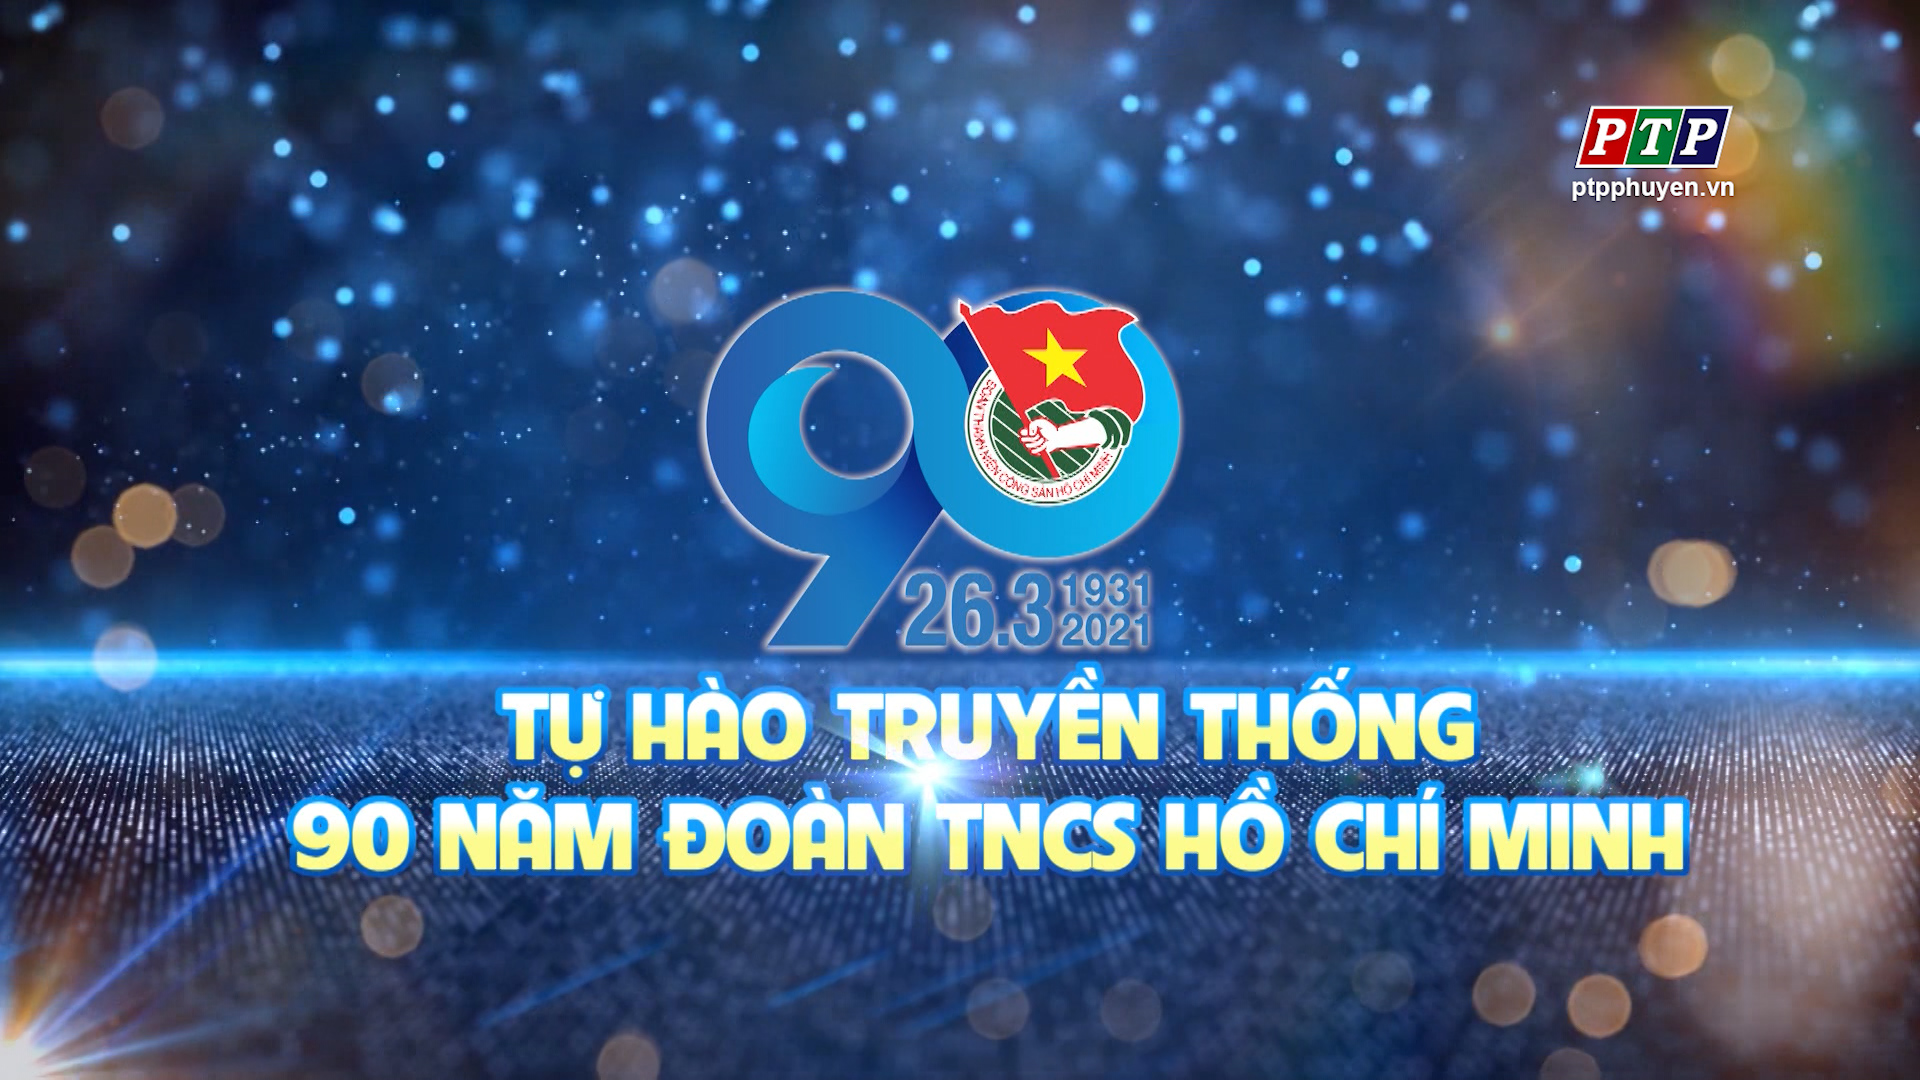 PS - Tự Hào Truyền Thống 90 Năm Đoàn TNCS HCM